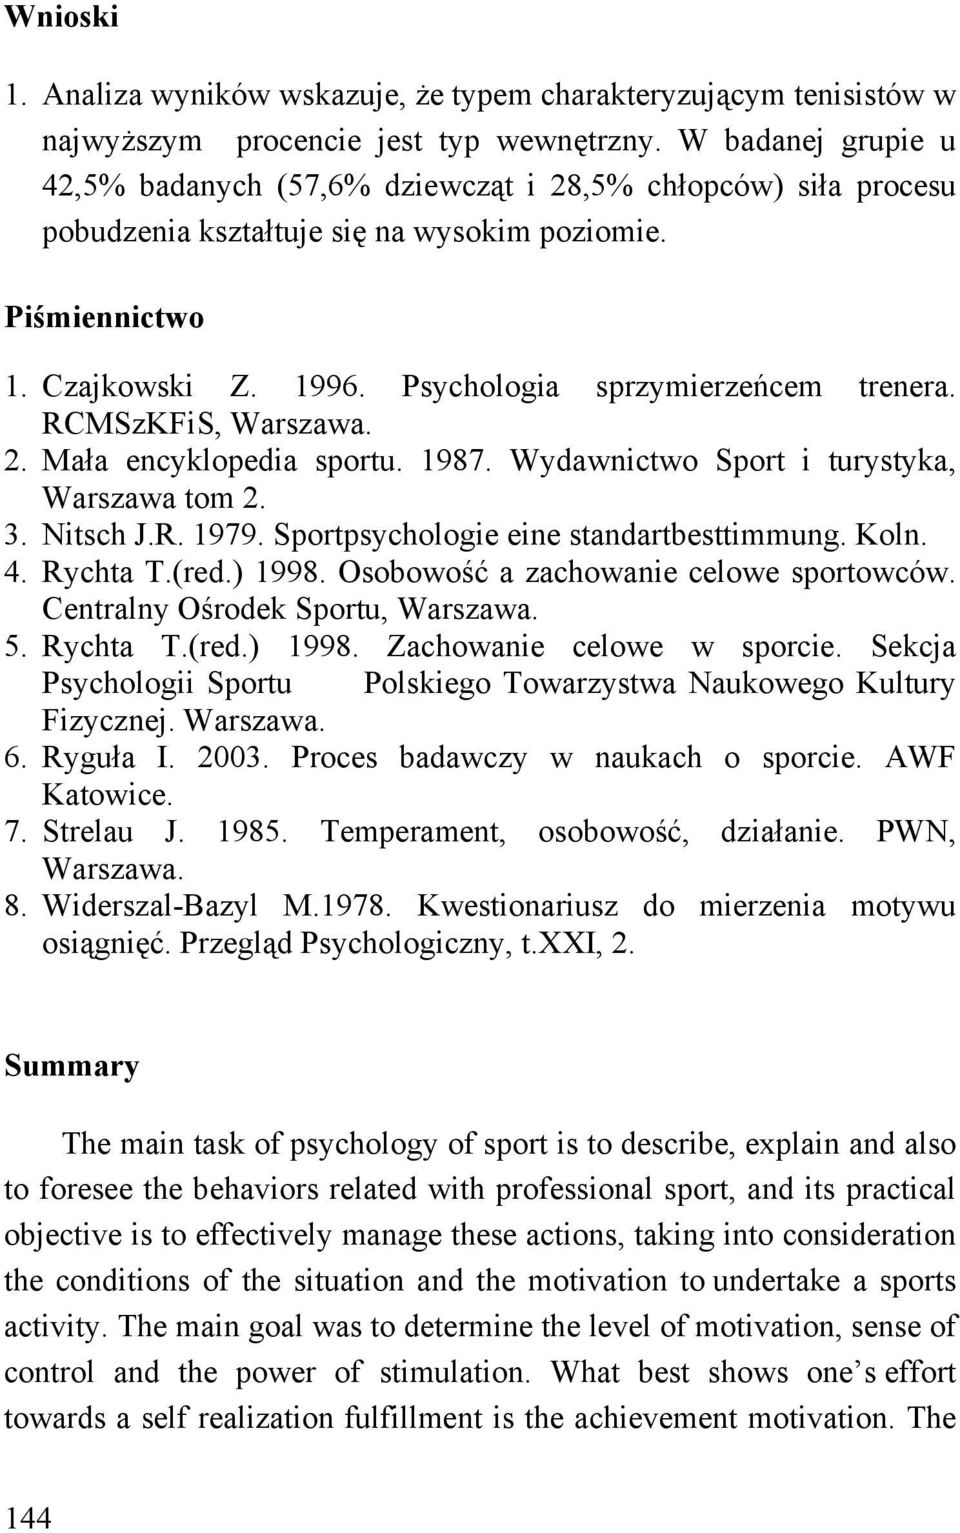 RCMSzKFiS, Warszawa. 2. Mała encyklopedia sportu. 1987. Wydawnictwo Sport i turystyka, Warszawa tom 2. 3. Nitsch J.R. 1979. Sportpsychologie eine standartbesttimmung. Koln. 4. Rychta T.(red.) 1998.